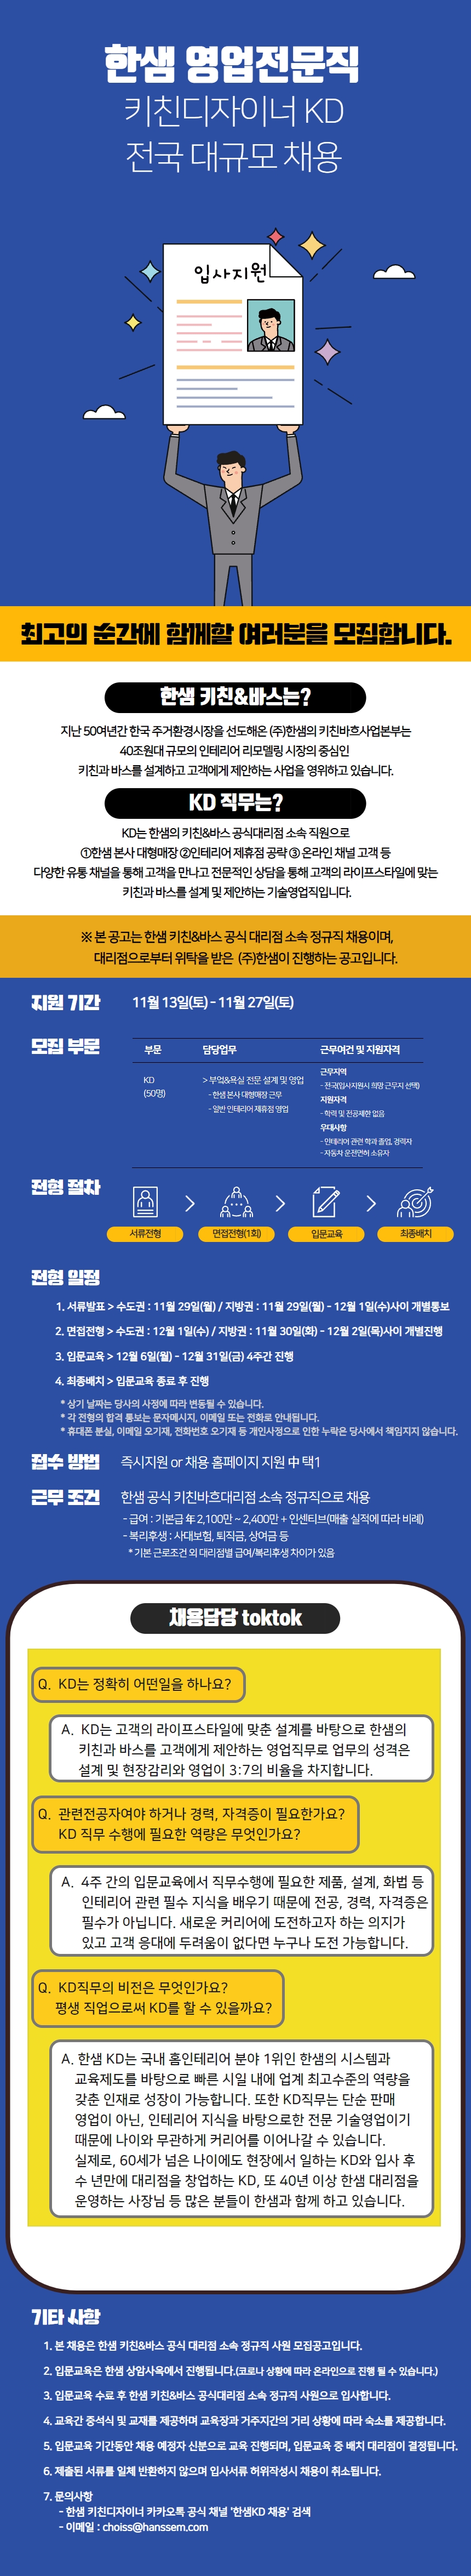 (주)한샘 키친&바스영업전문직(KD) 대규모 공개채용 (21년 11월) (~11/27까지 접수)